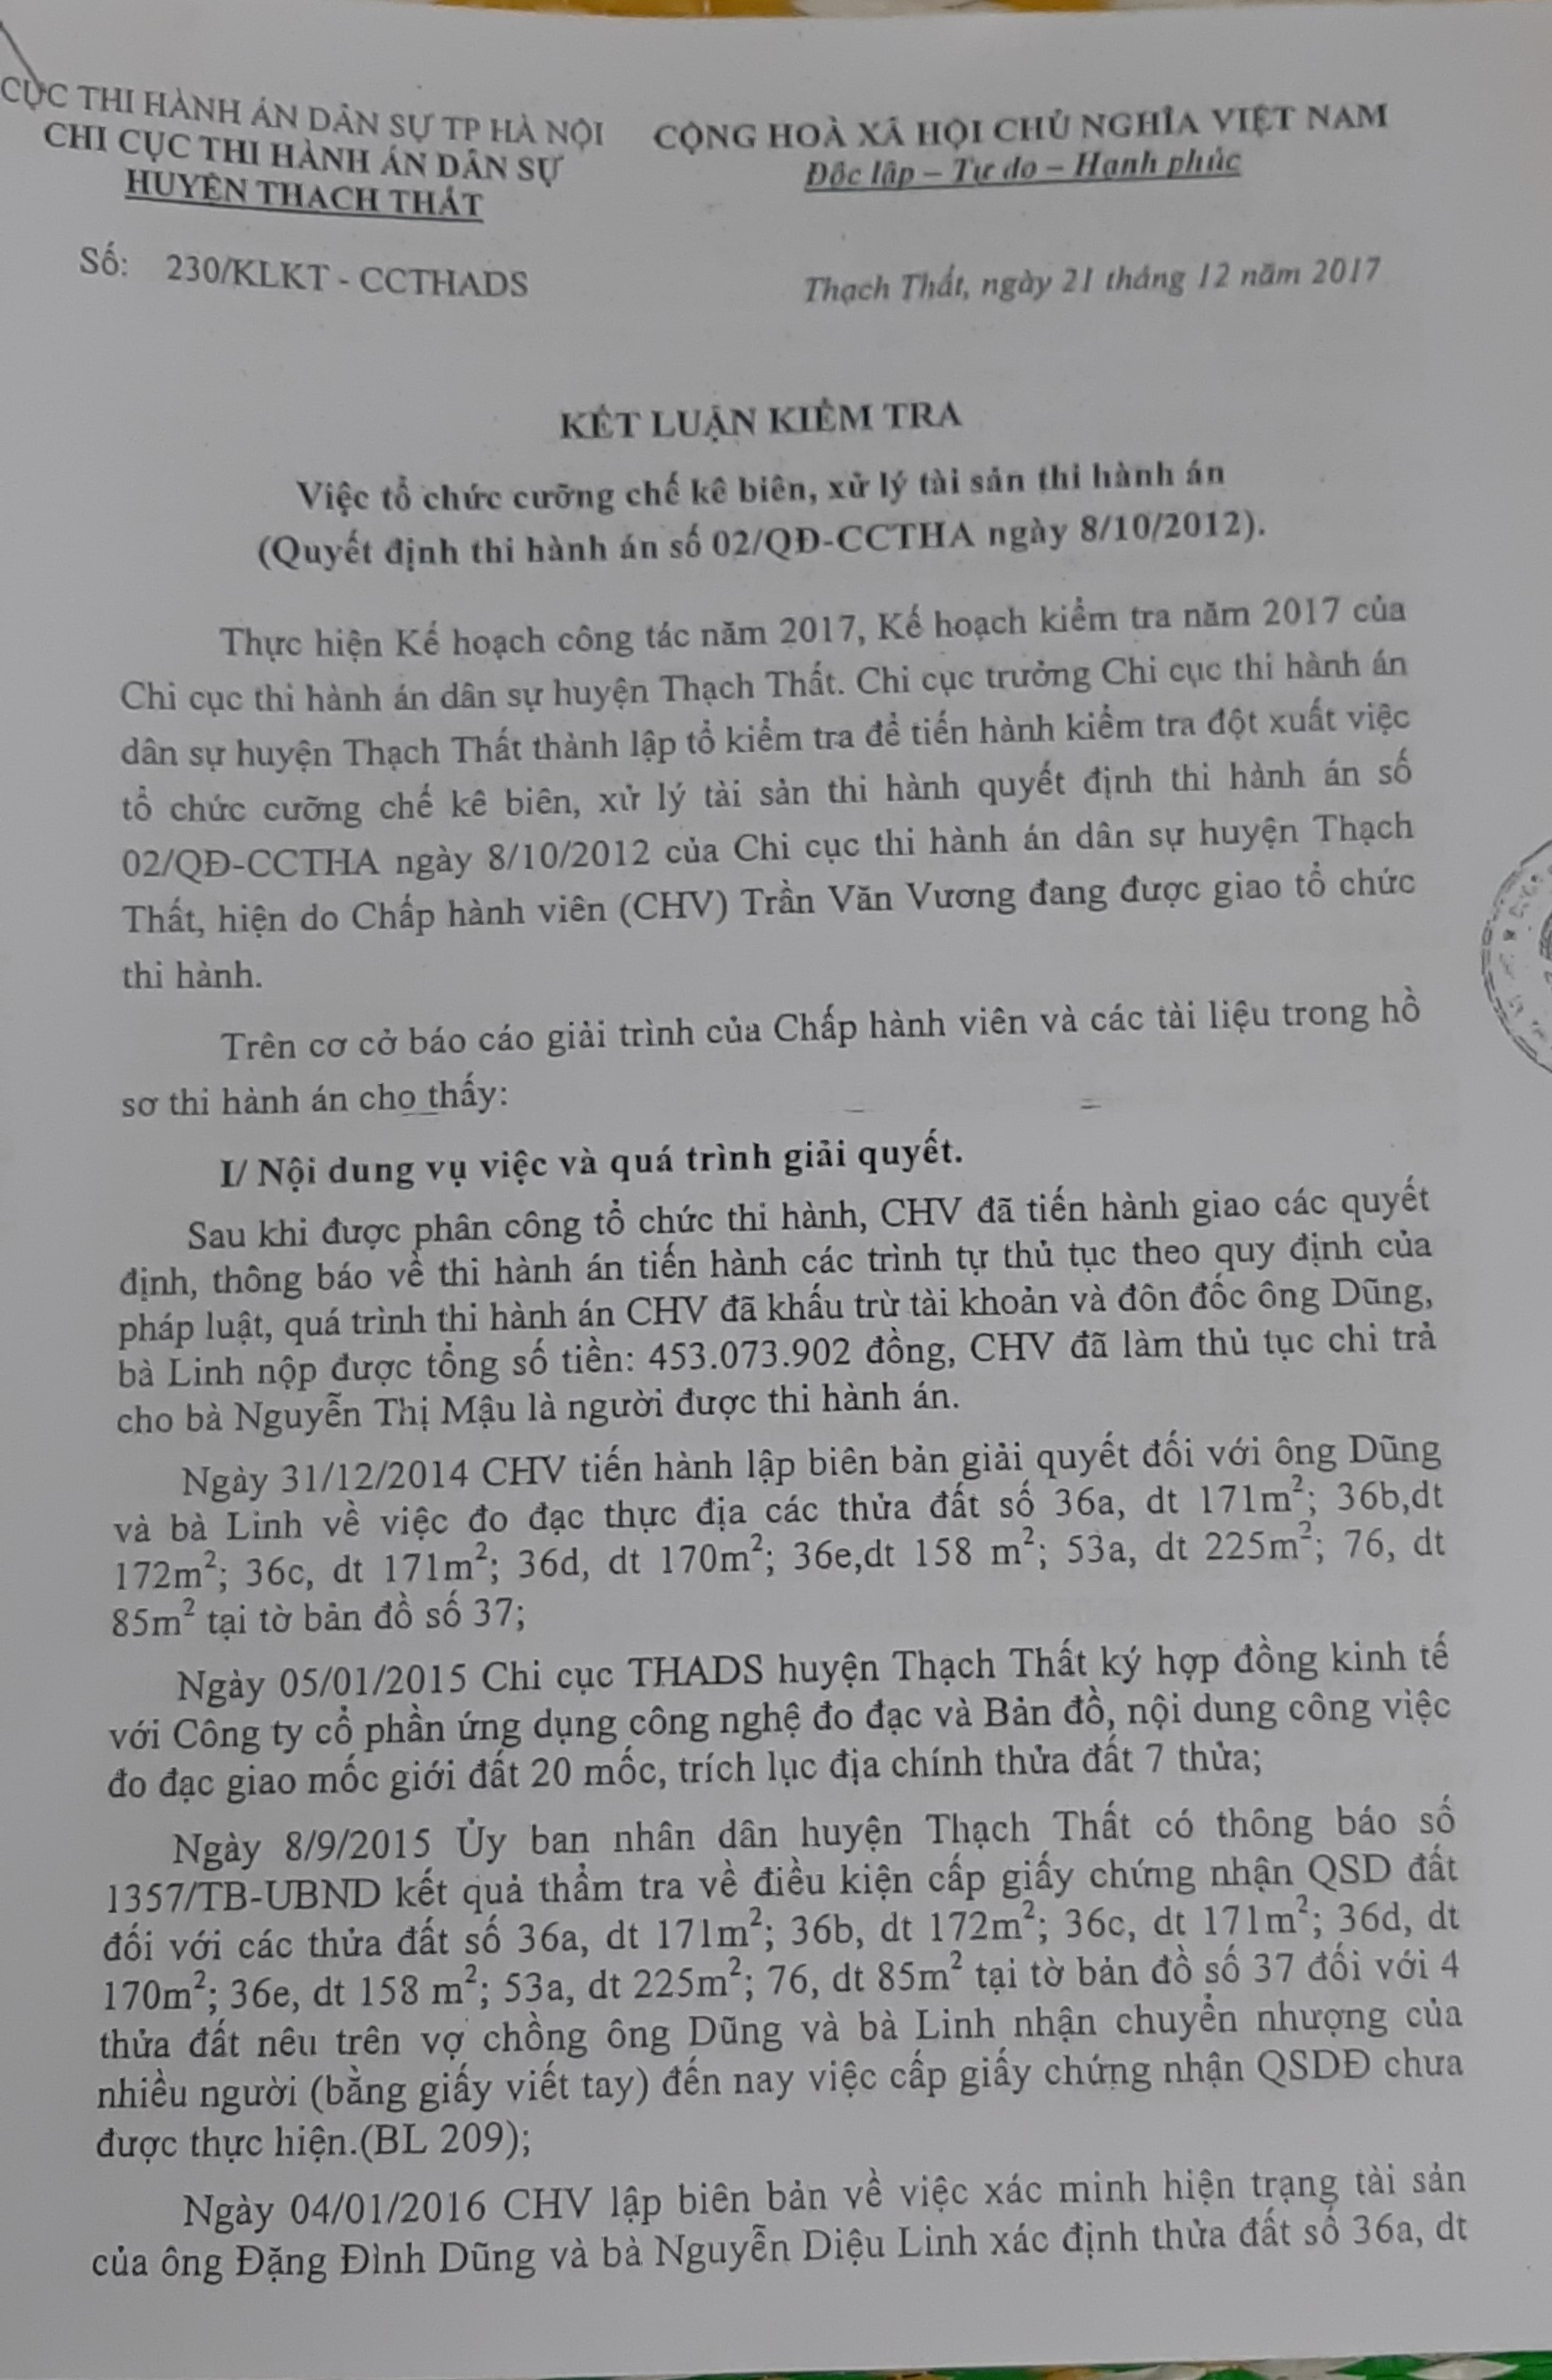 Thạch Thất, Hà Nội: Chấp hành viên vi phạm về trình tự tố tụng khi thi hành án